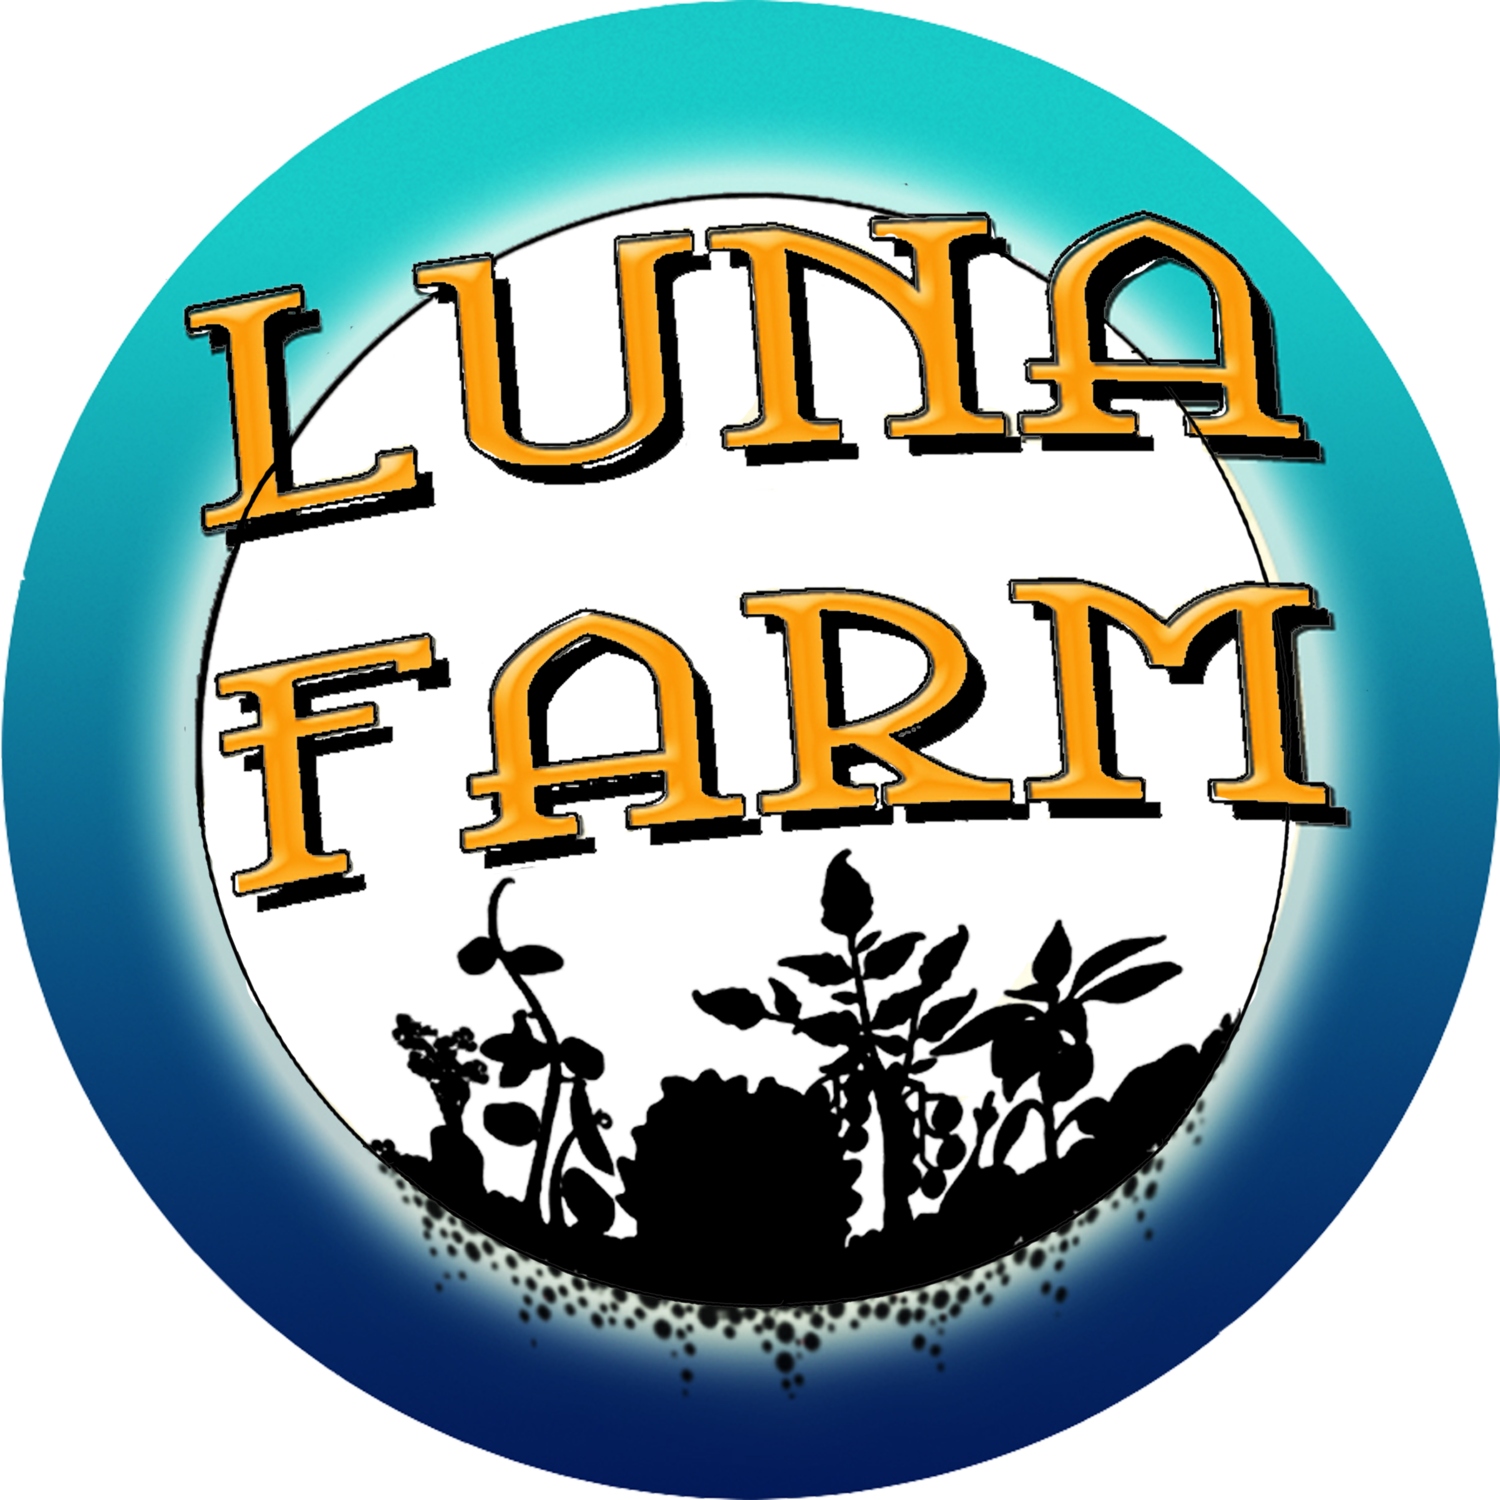 Luna Farm at Camp Grant